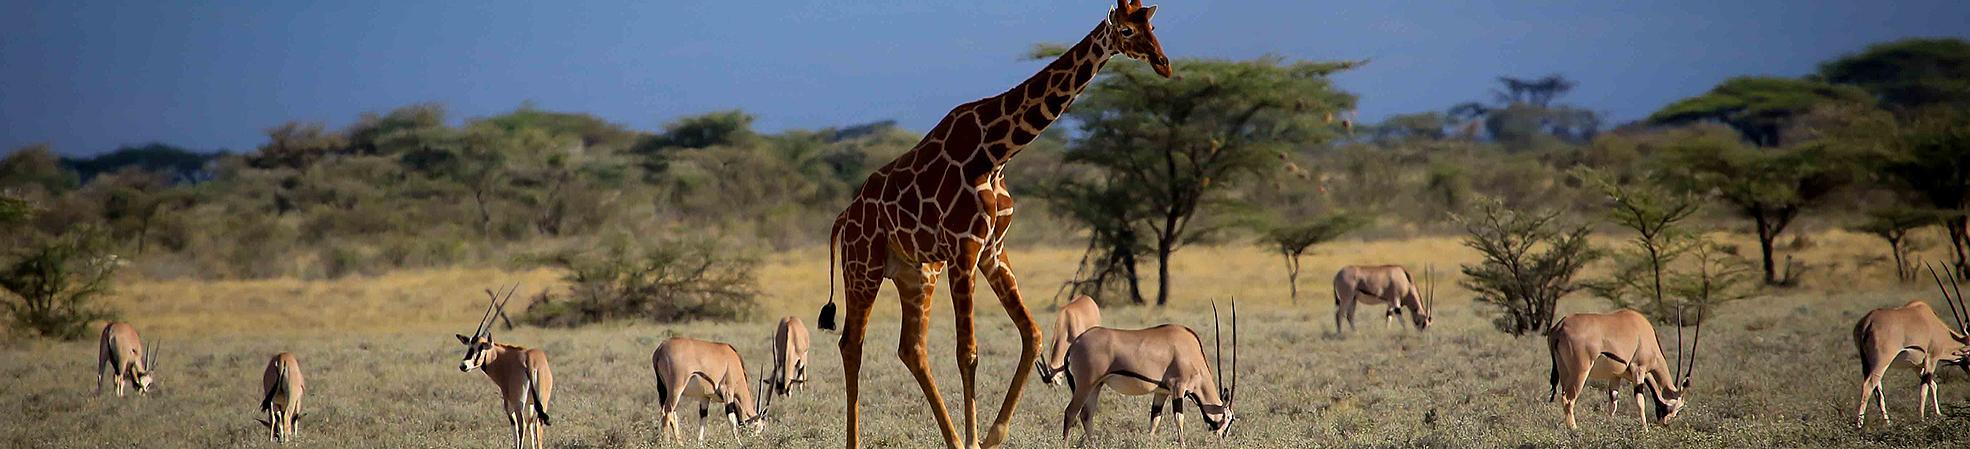 Incredible Wildlife Safari in the Unspoiled Land of Tanzania